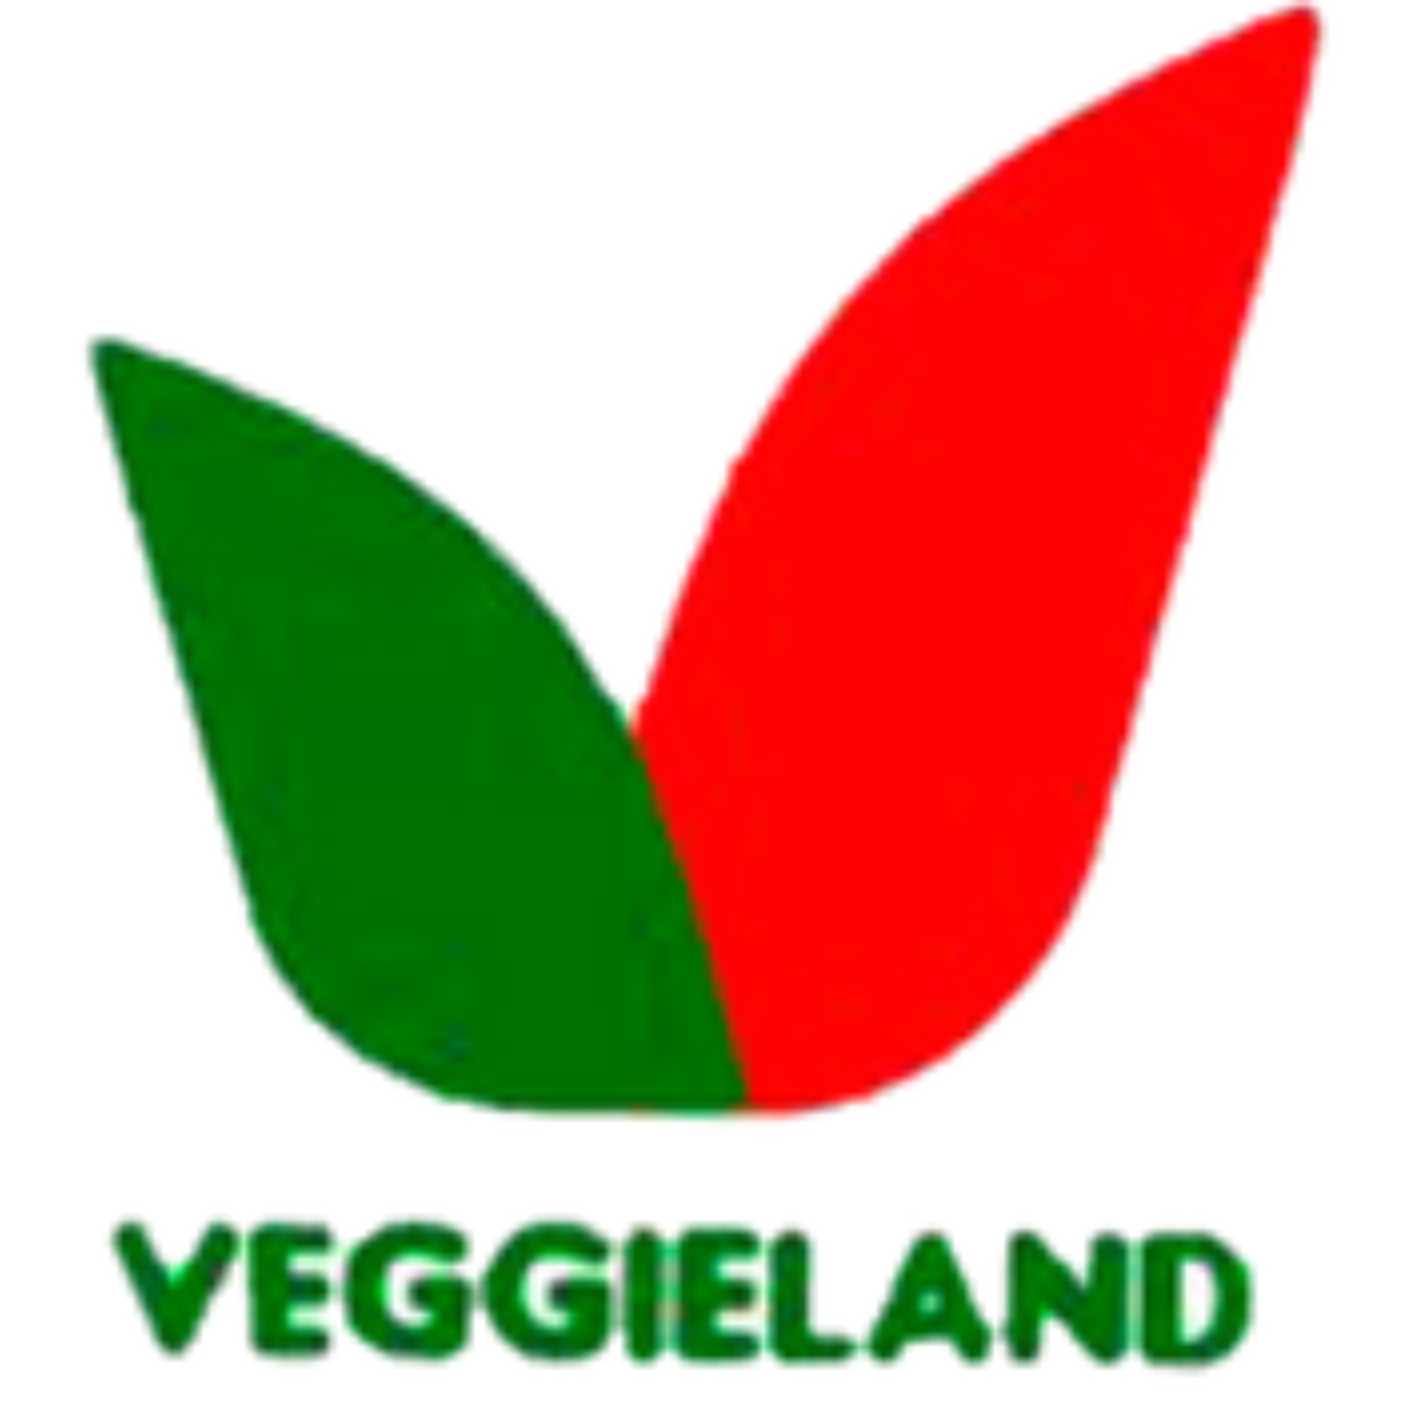 15- veggieland